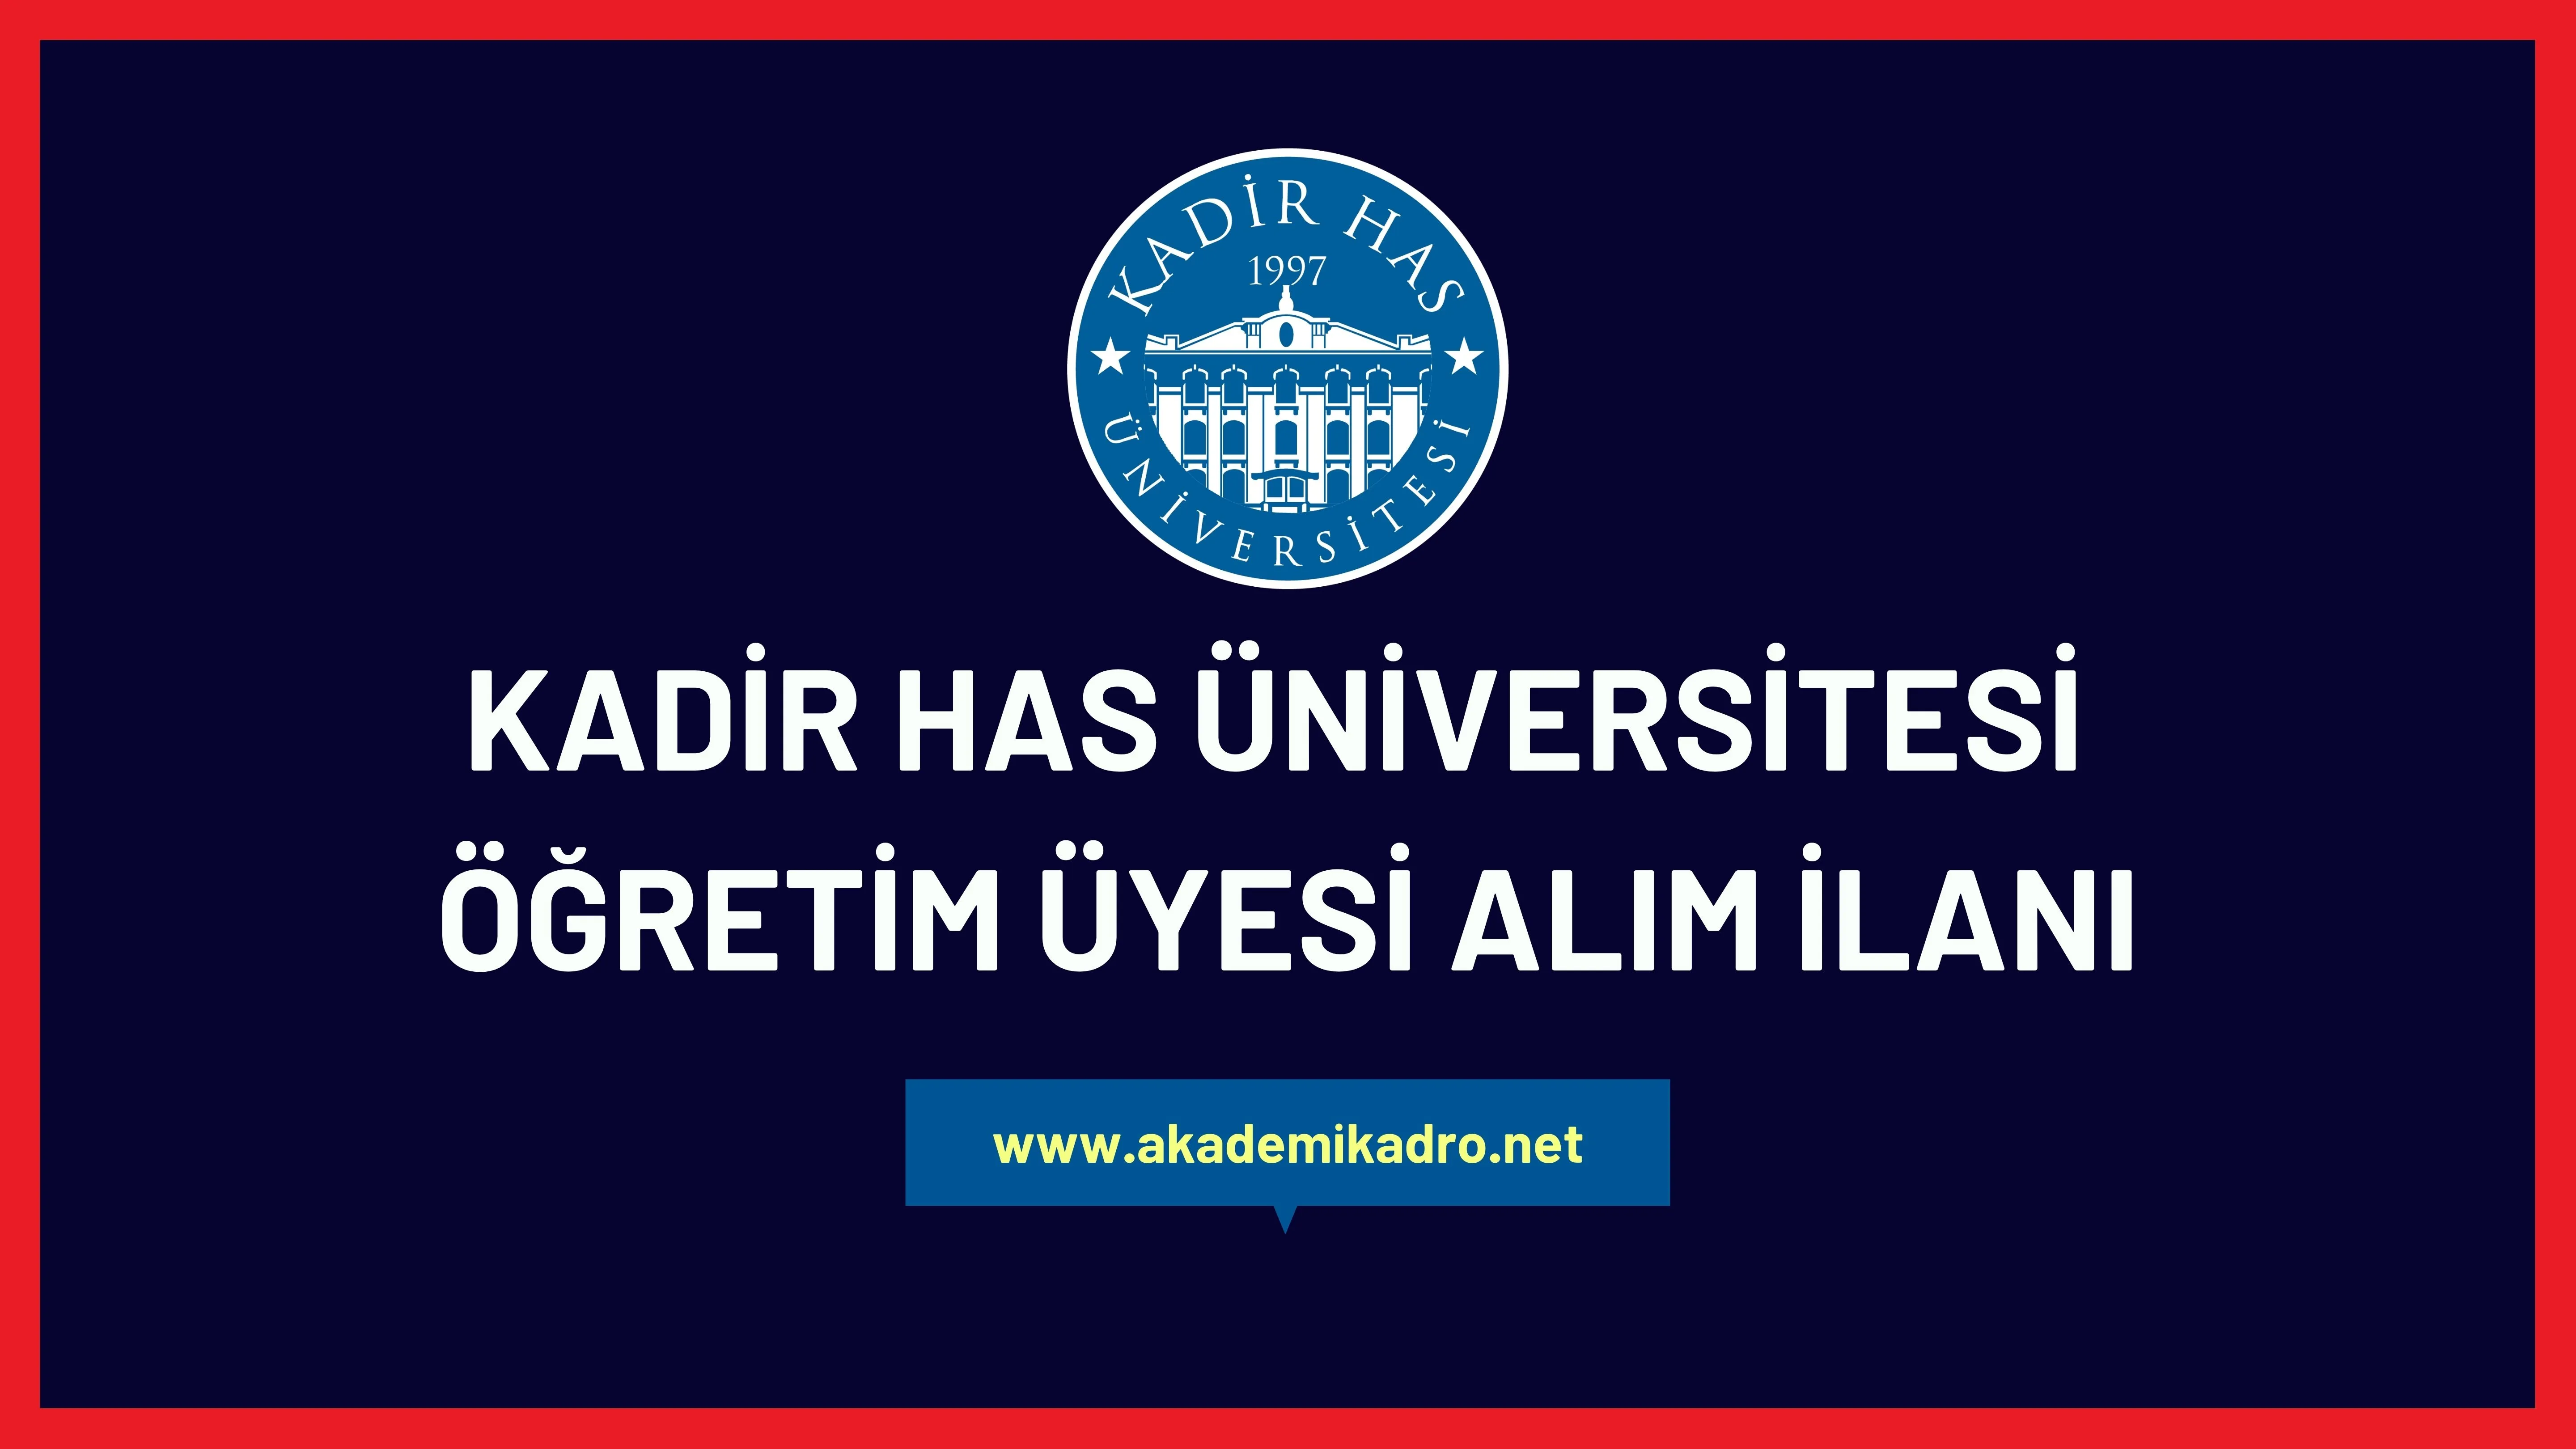 Kadir Has Üniversitesi 2 akademik personel alacak.